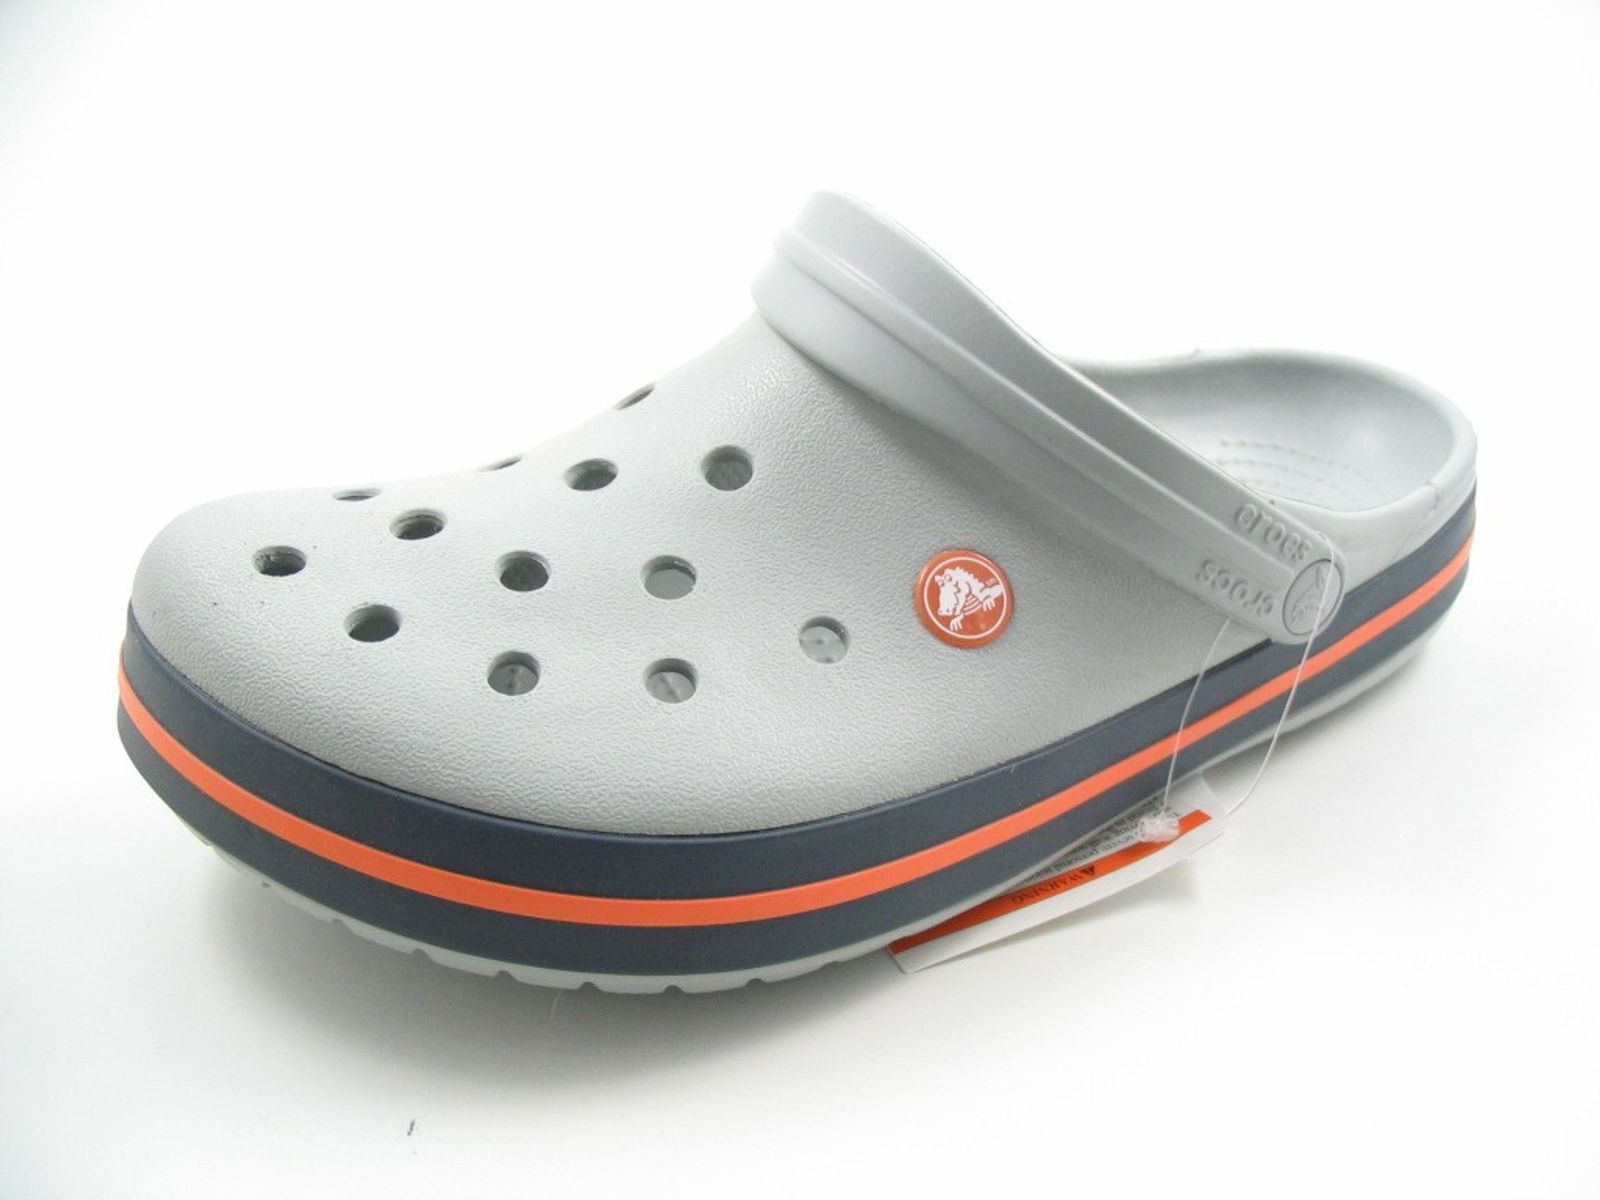 Schuh von Crocs, 10